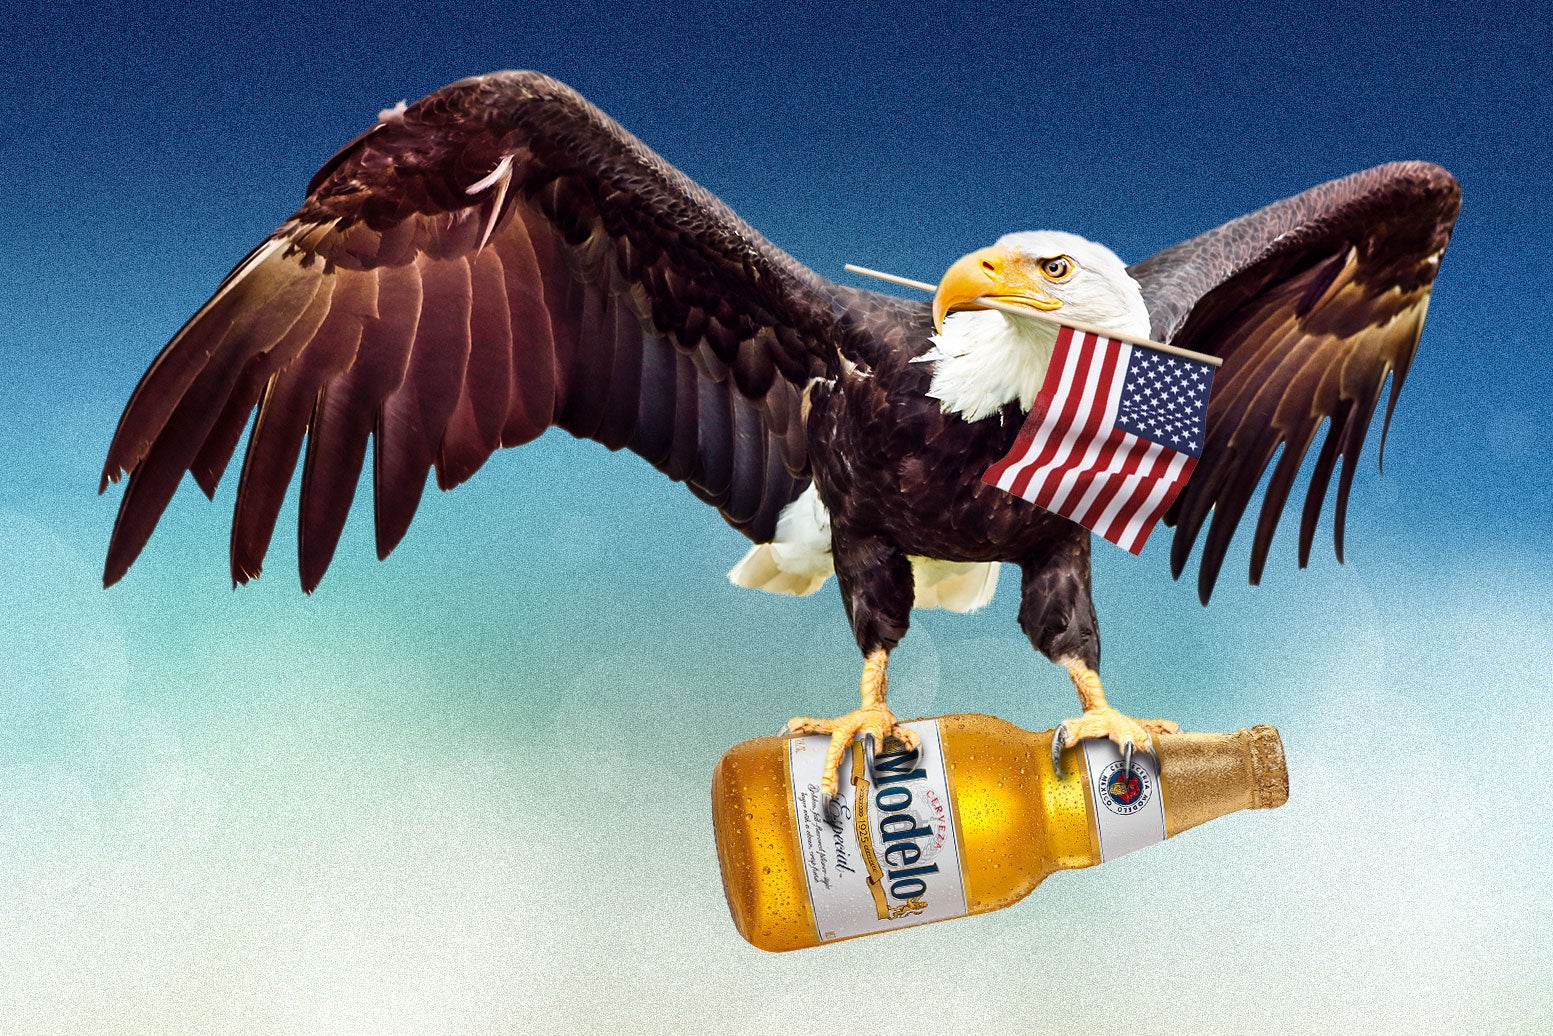 How America Got Its Surprising New Top Beer Henry Grabar